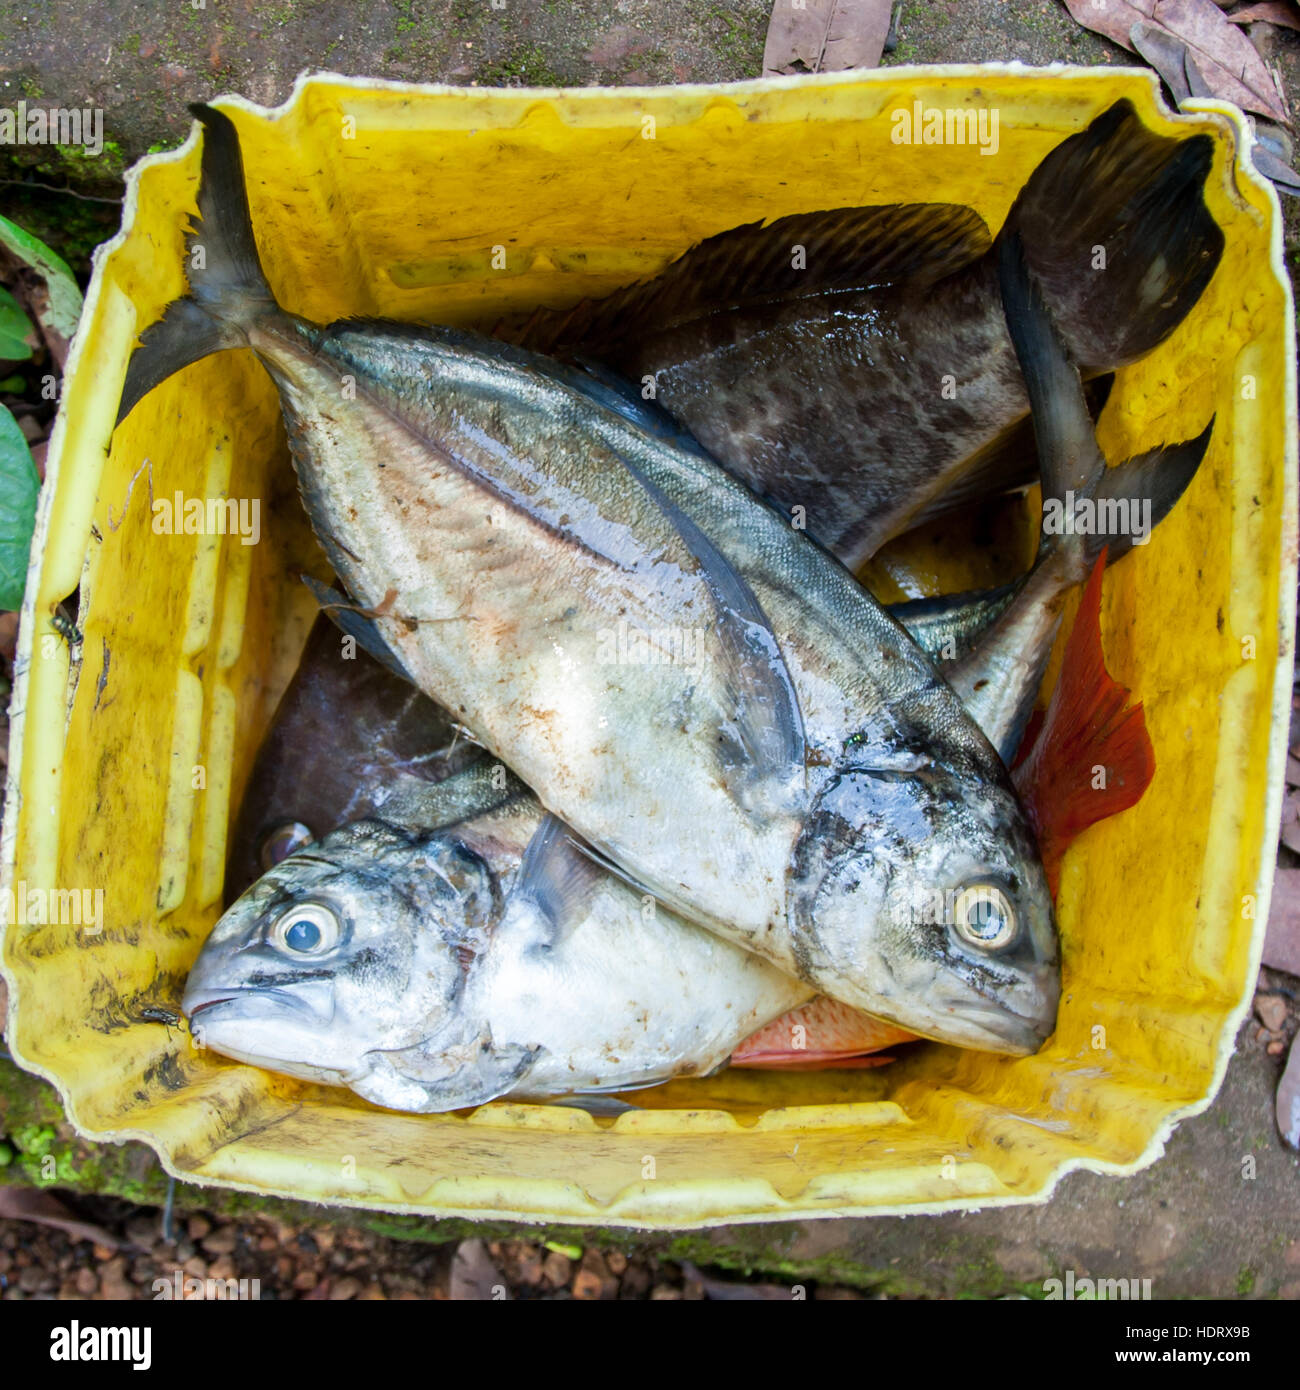 Fischcought auf Banana Island, Sierra Leone. Eine gute Portion Fisch aus dem Atlantik. In Sierra Leone werden keine Lebensmittel lange gelagert, sondern in der Regel frisch zubereitet Stockfoto